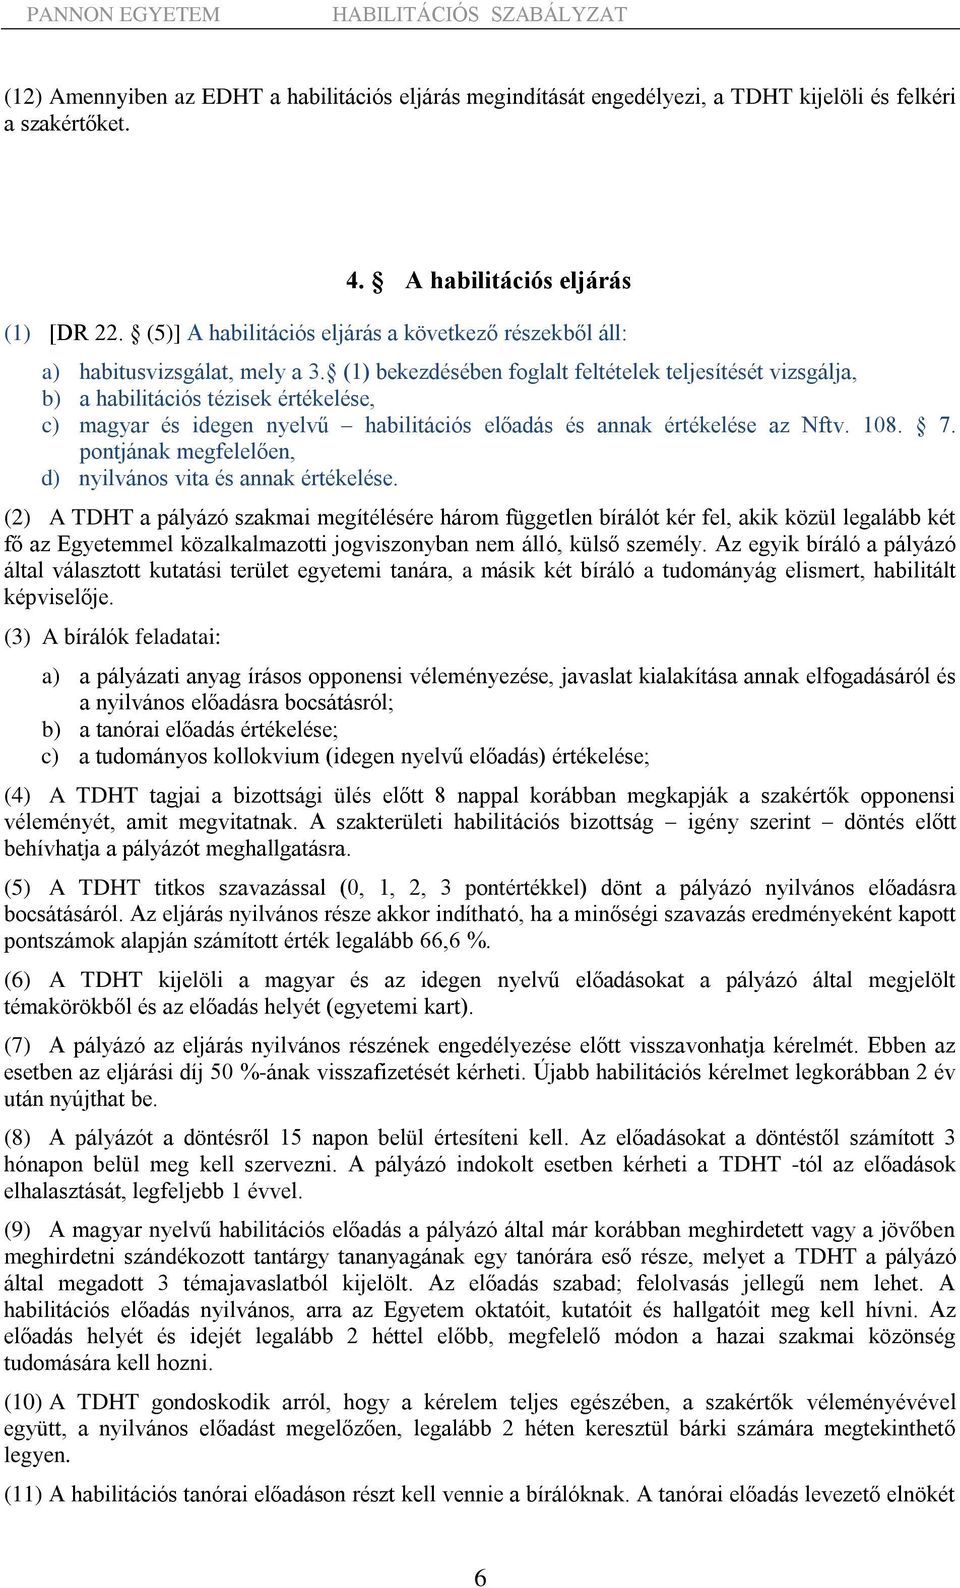 (1) bekezdésében foglalt feltételek teljesítését vizsgálja, b) a habilitációs tézisek értékelése, c) magyar és idegen nyelvű habilitációs előadás és annak értékelése az Nftv. 108. 7.